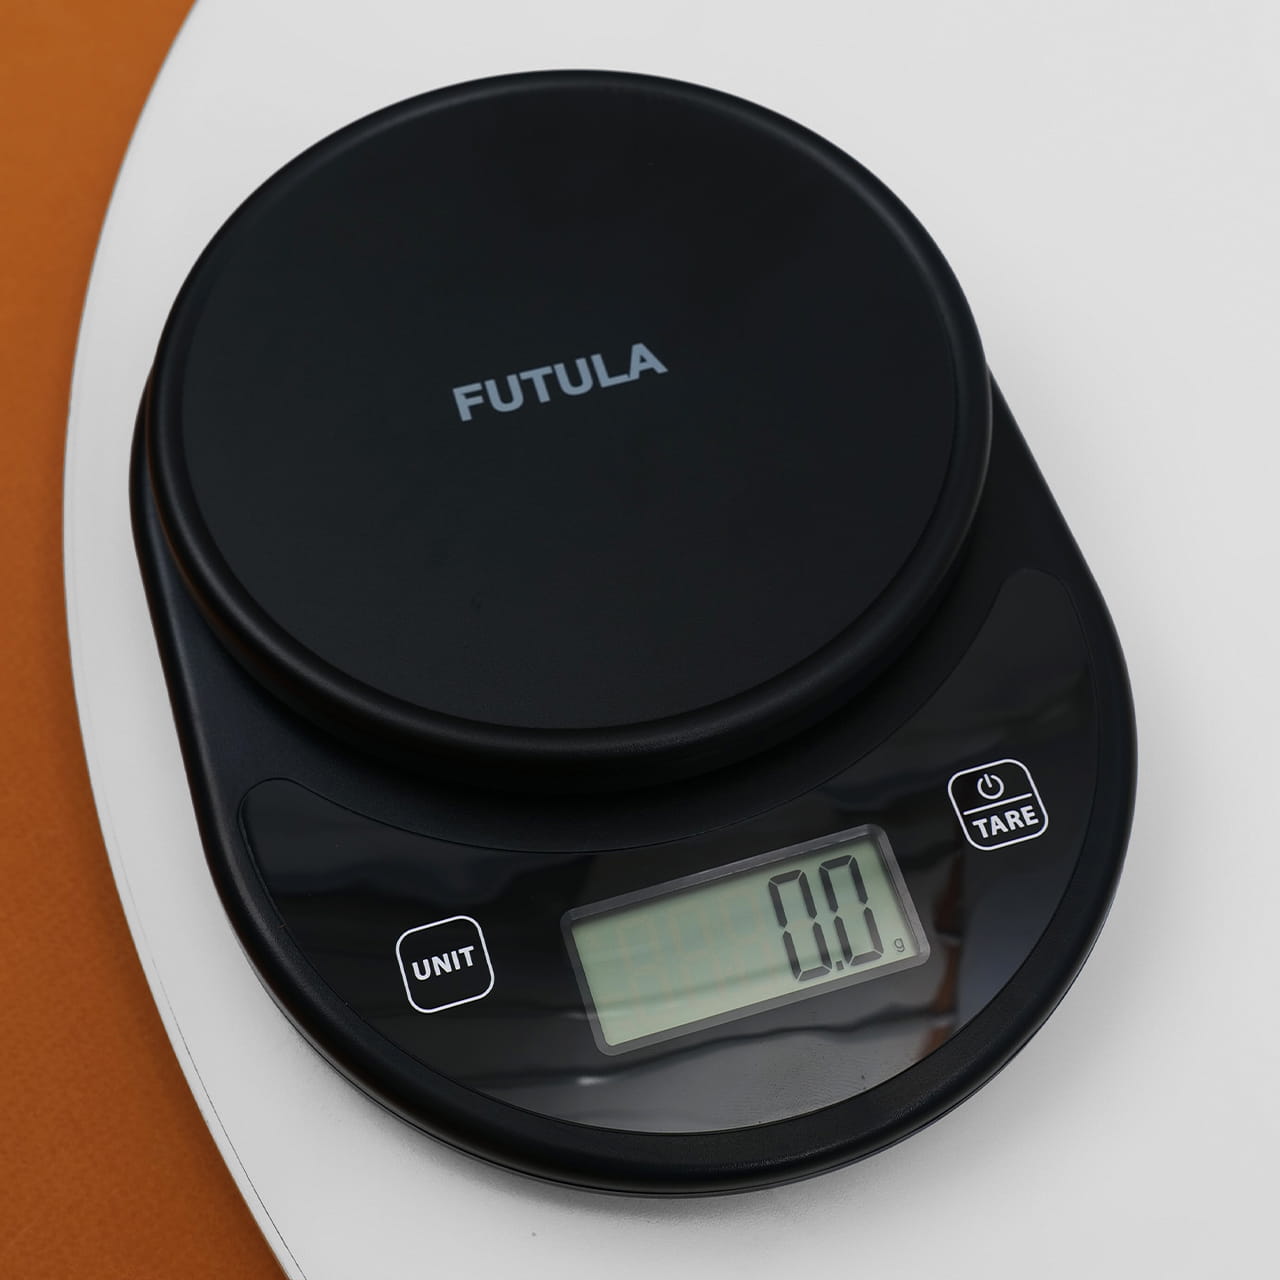 Управление весами осуществляется с помощью двух сенсорных кнопок